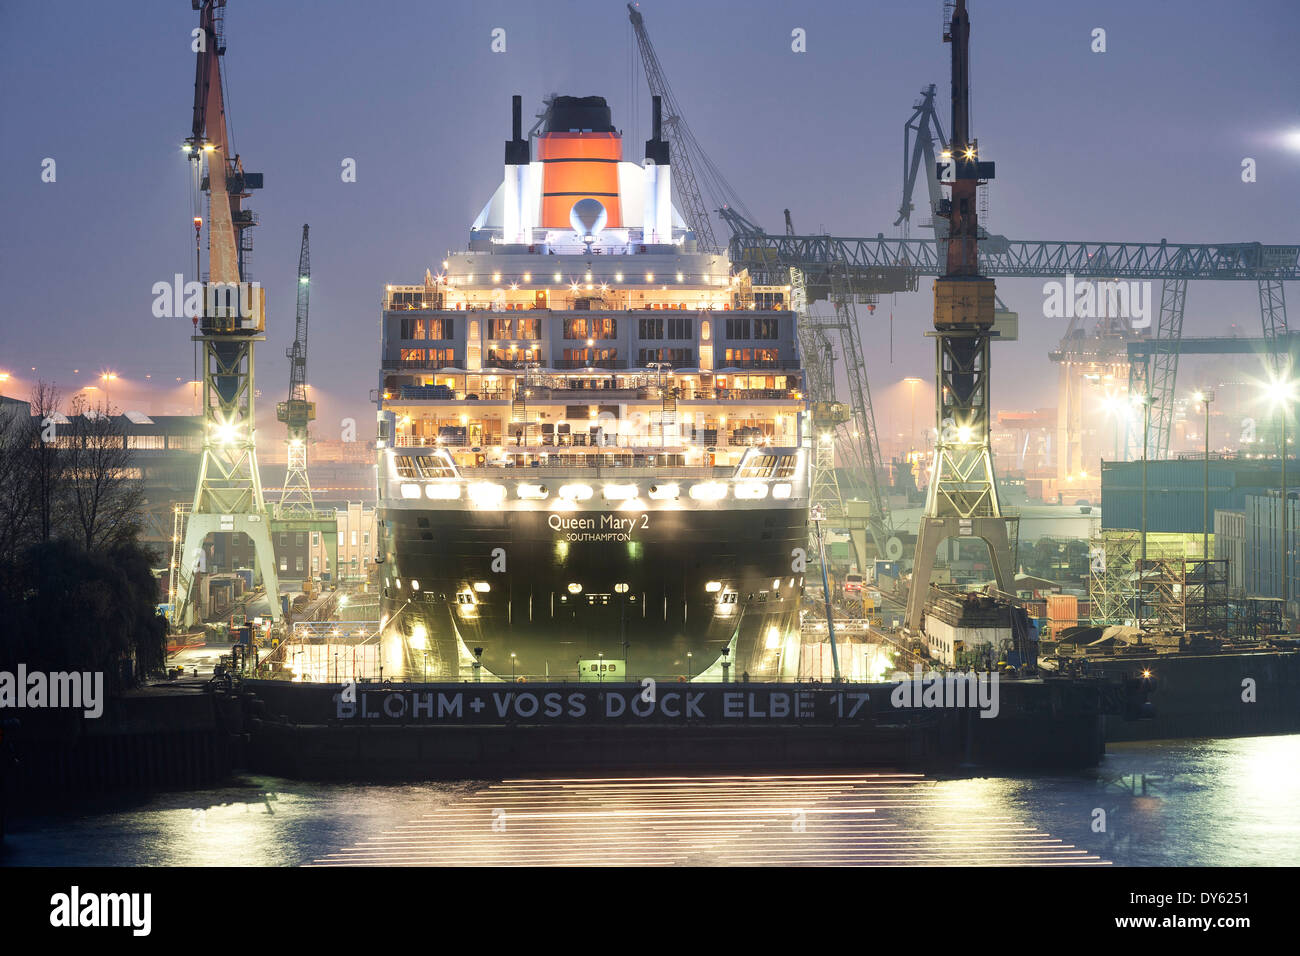 Vista hacia Blohm y Voss Dock 17 Elba con el Queen Mary 2, el puerto de Hamburgo, la Ciudad Hanseática de Hamburgo, Alemania, Europa Foto de stock